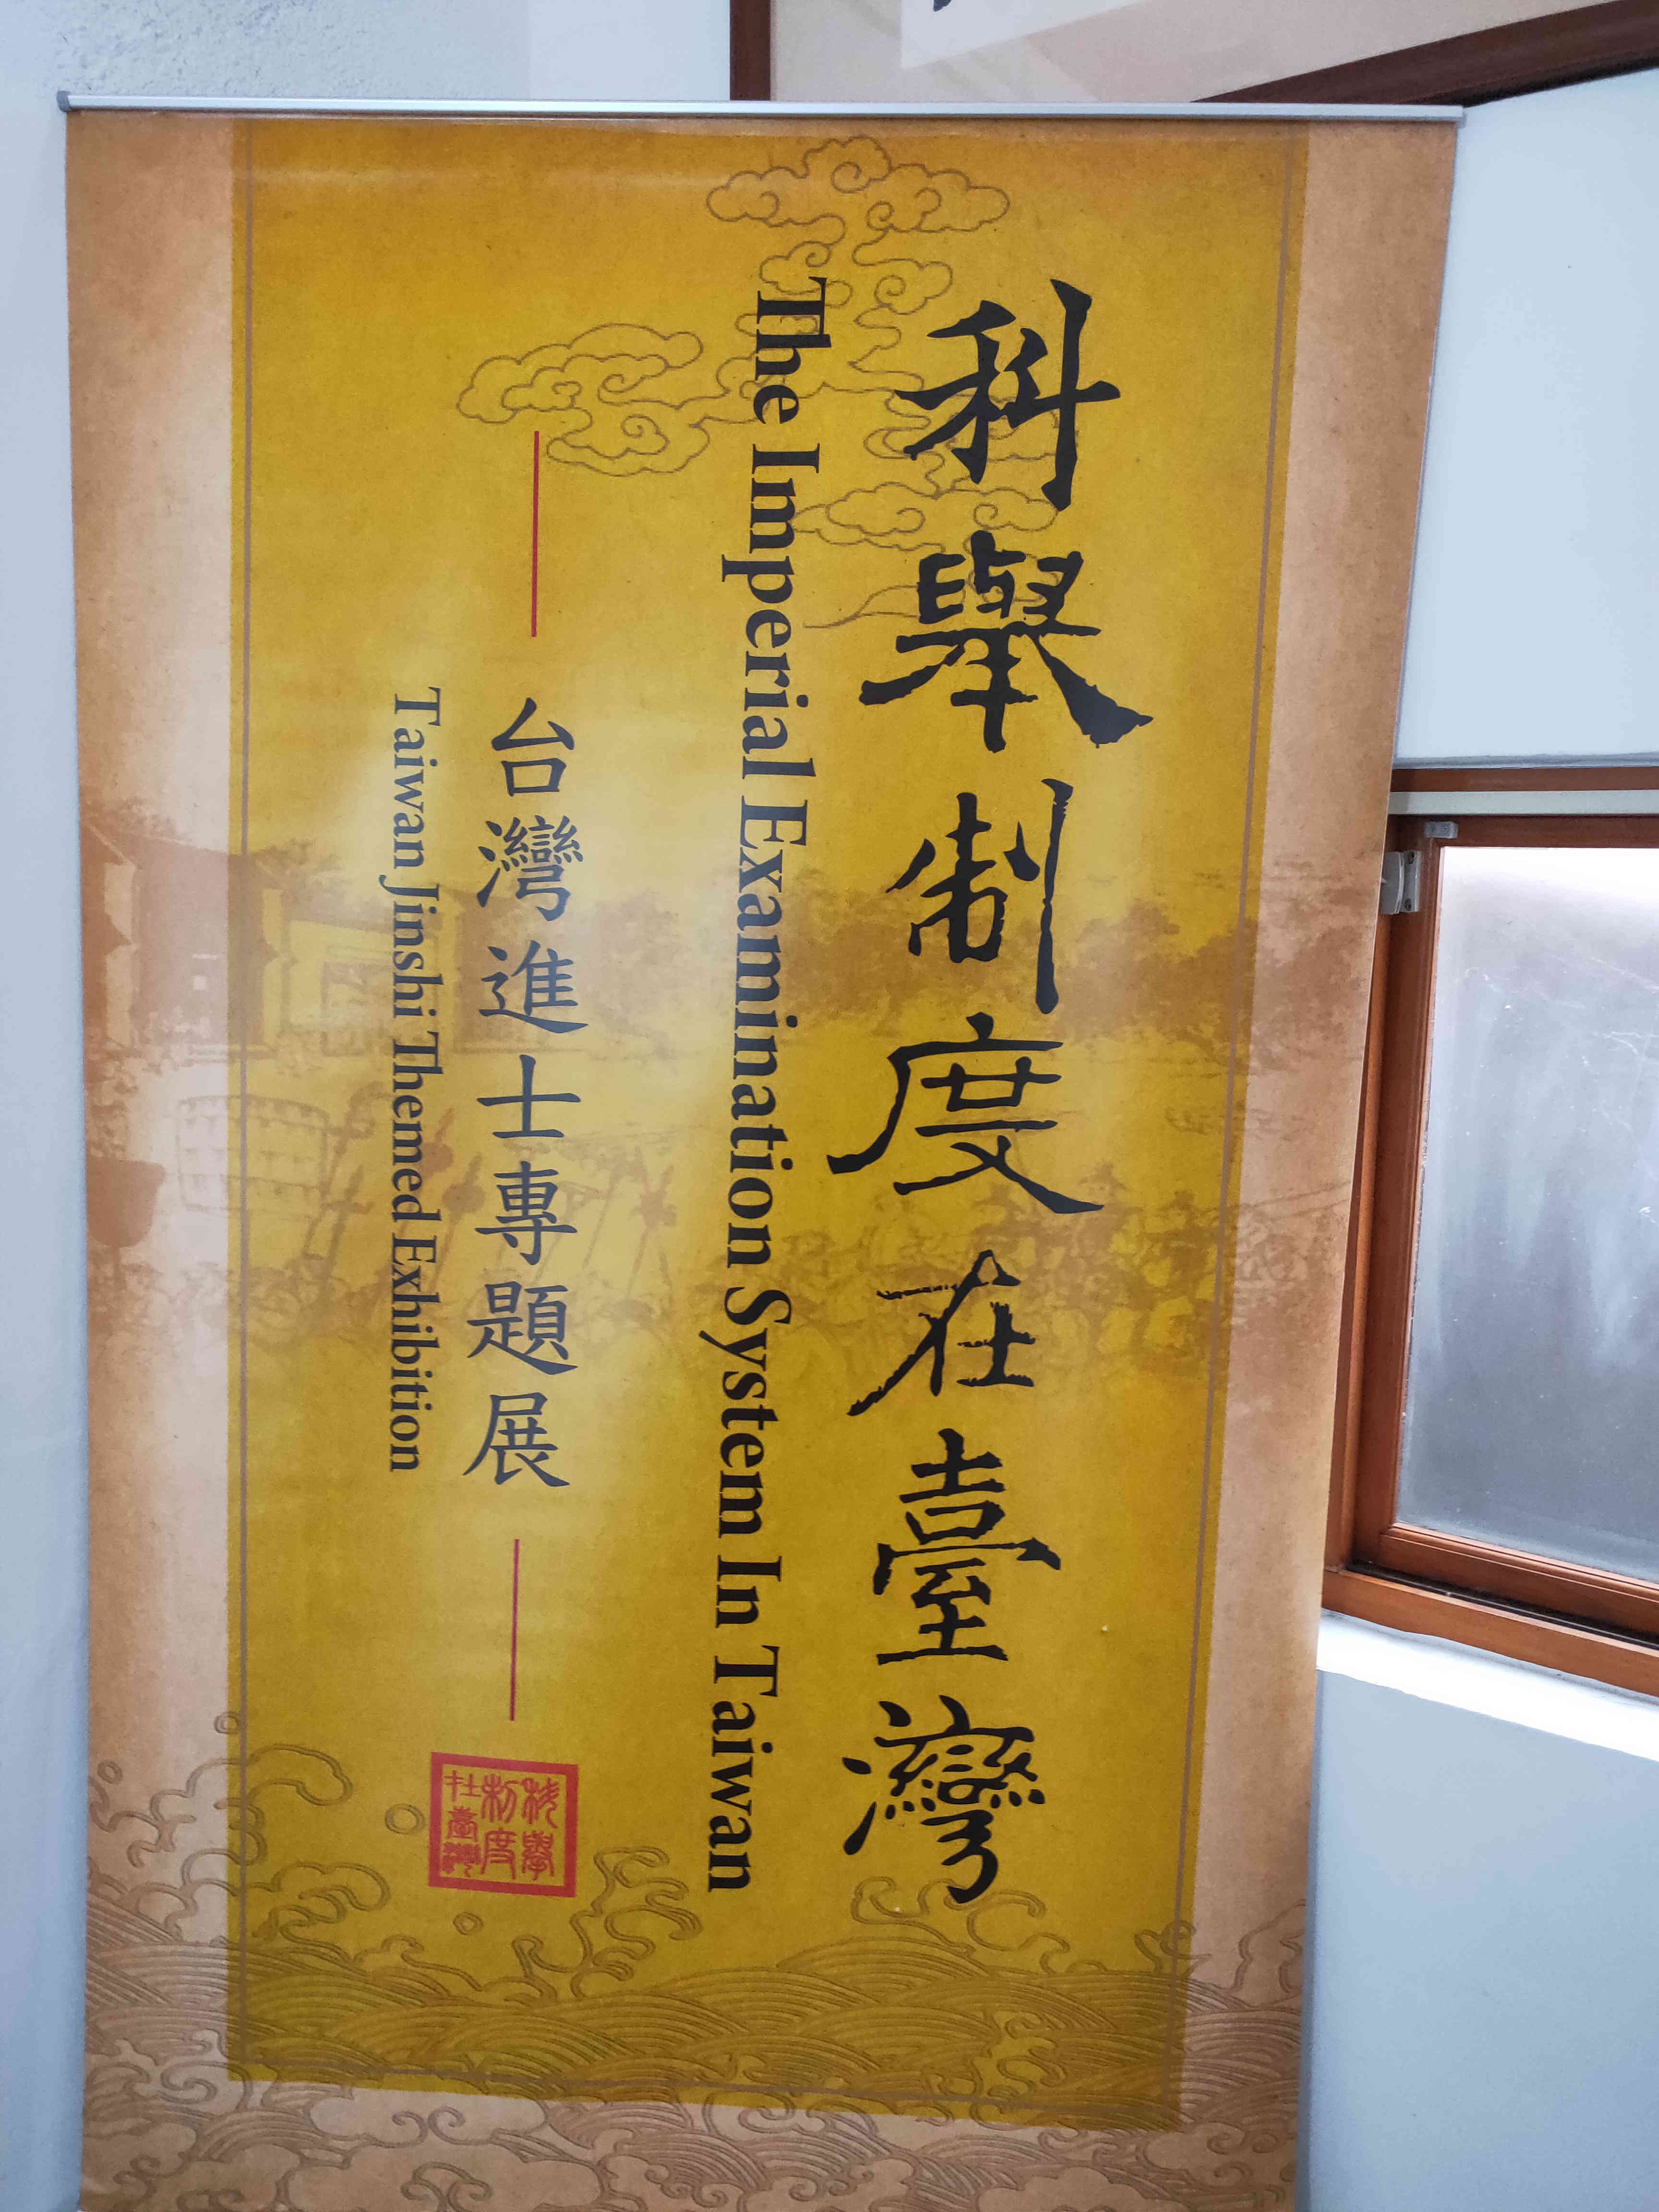 “科举制度在台湾——台湾进士专题展”是北京市台联精心策划的文化交流品牌项目